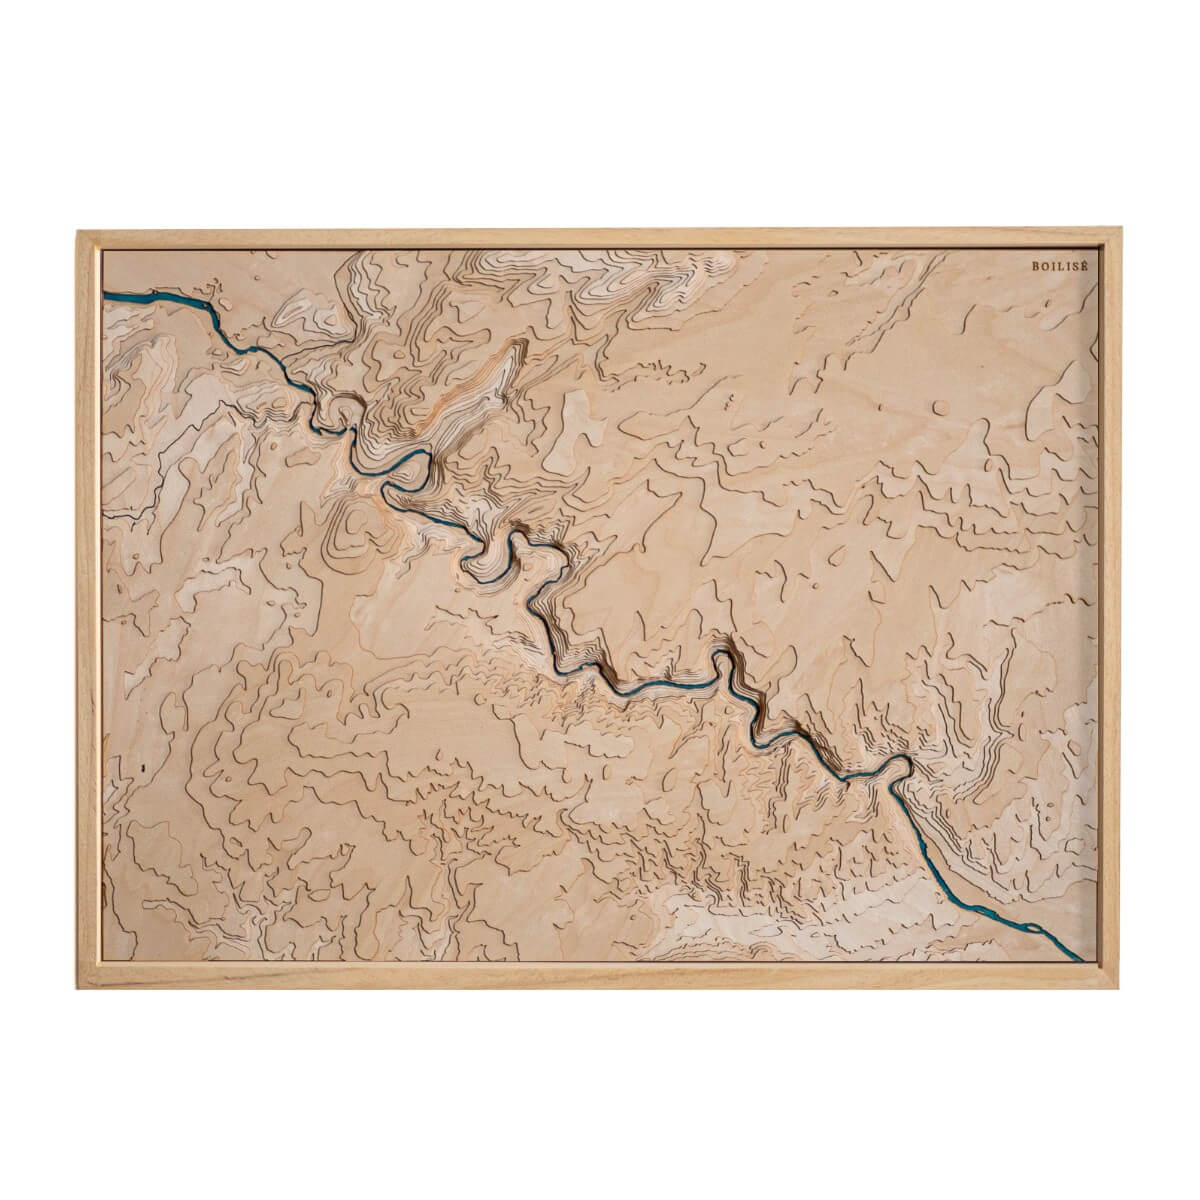 Les gorges de l'Ardèche représentée dans une carte au style unique